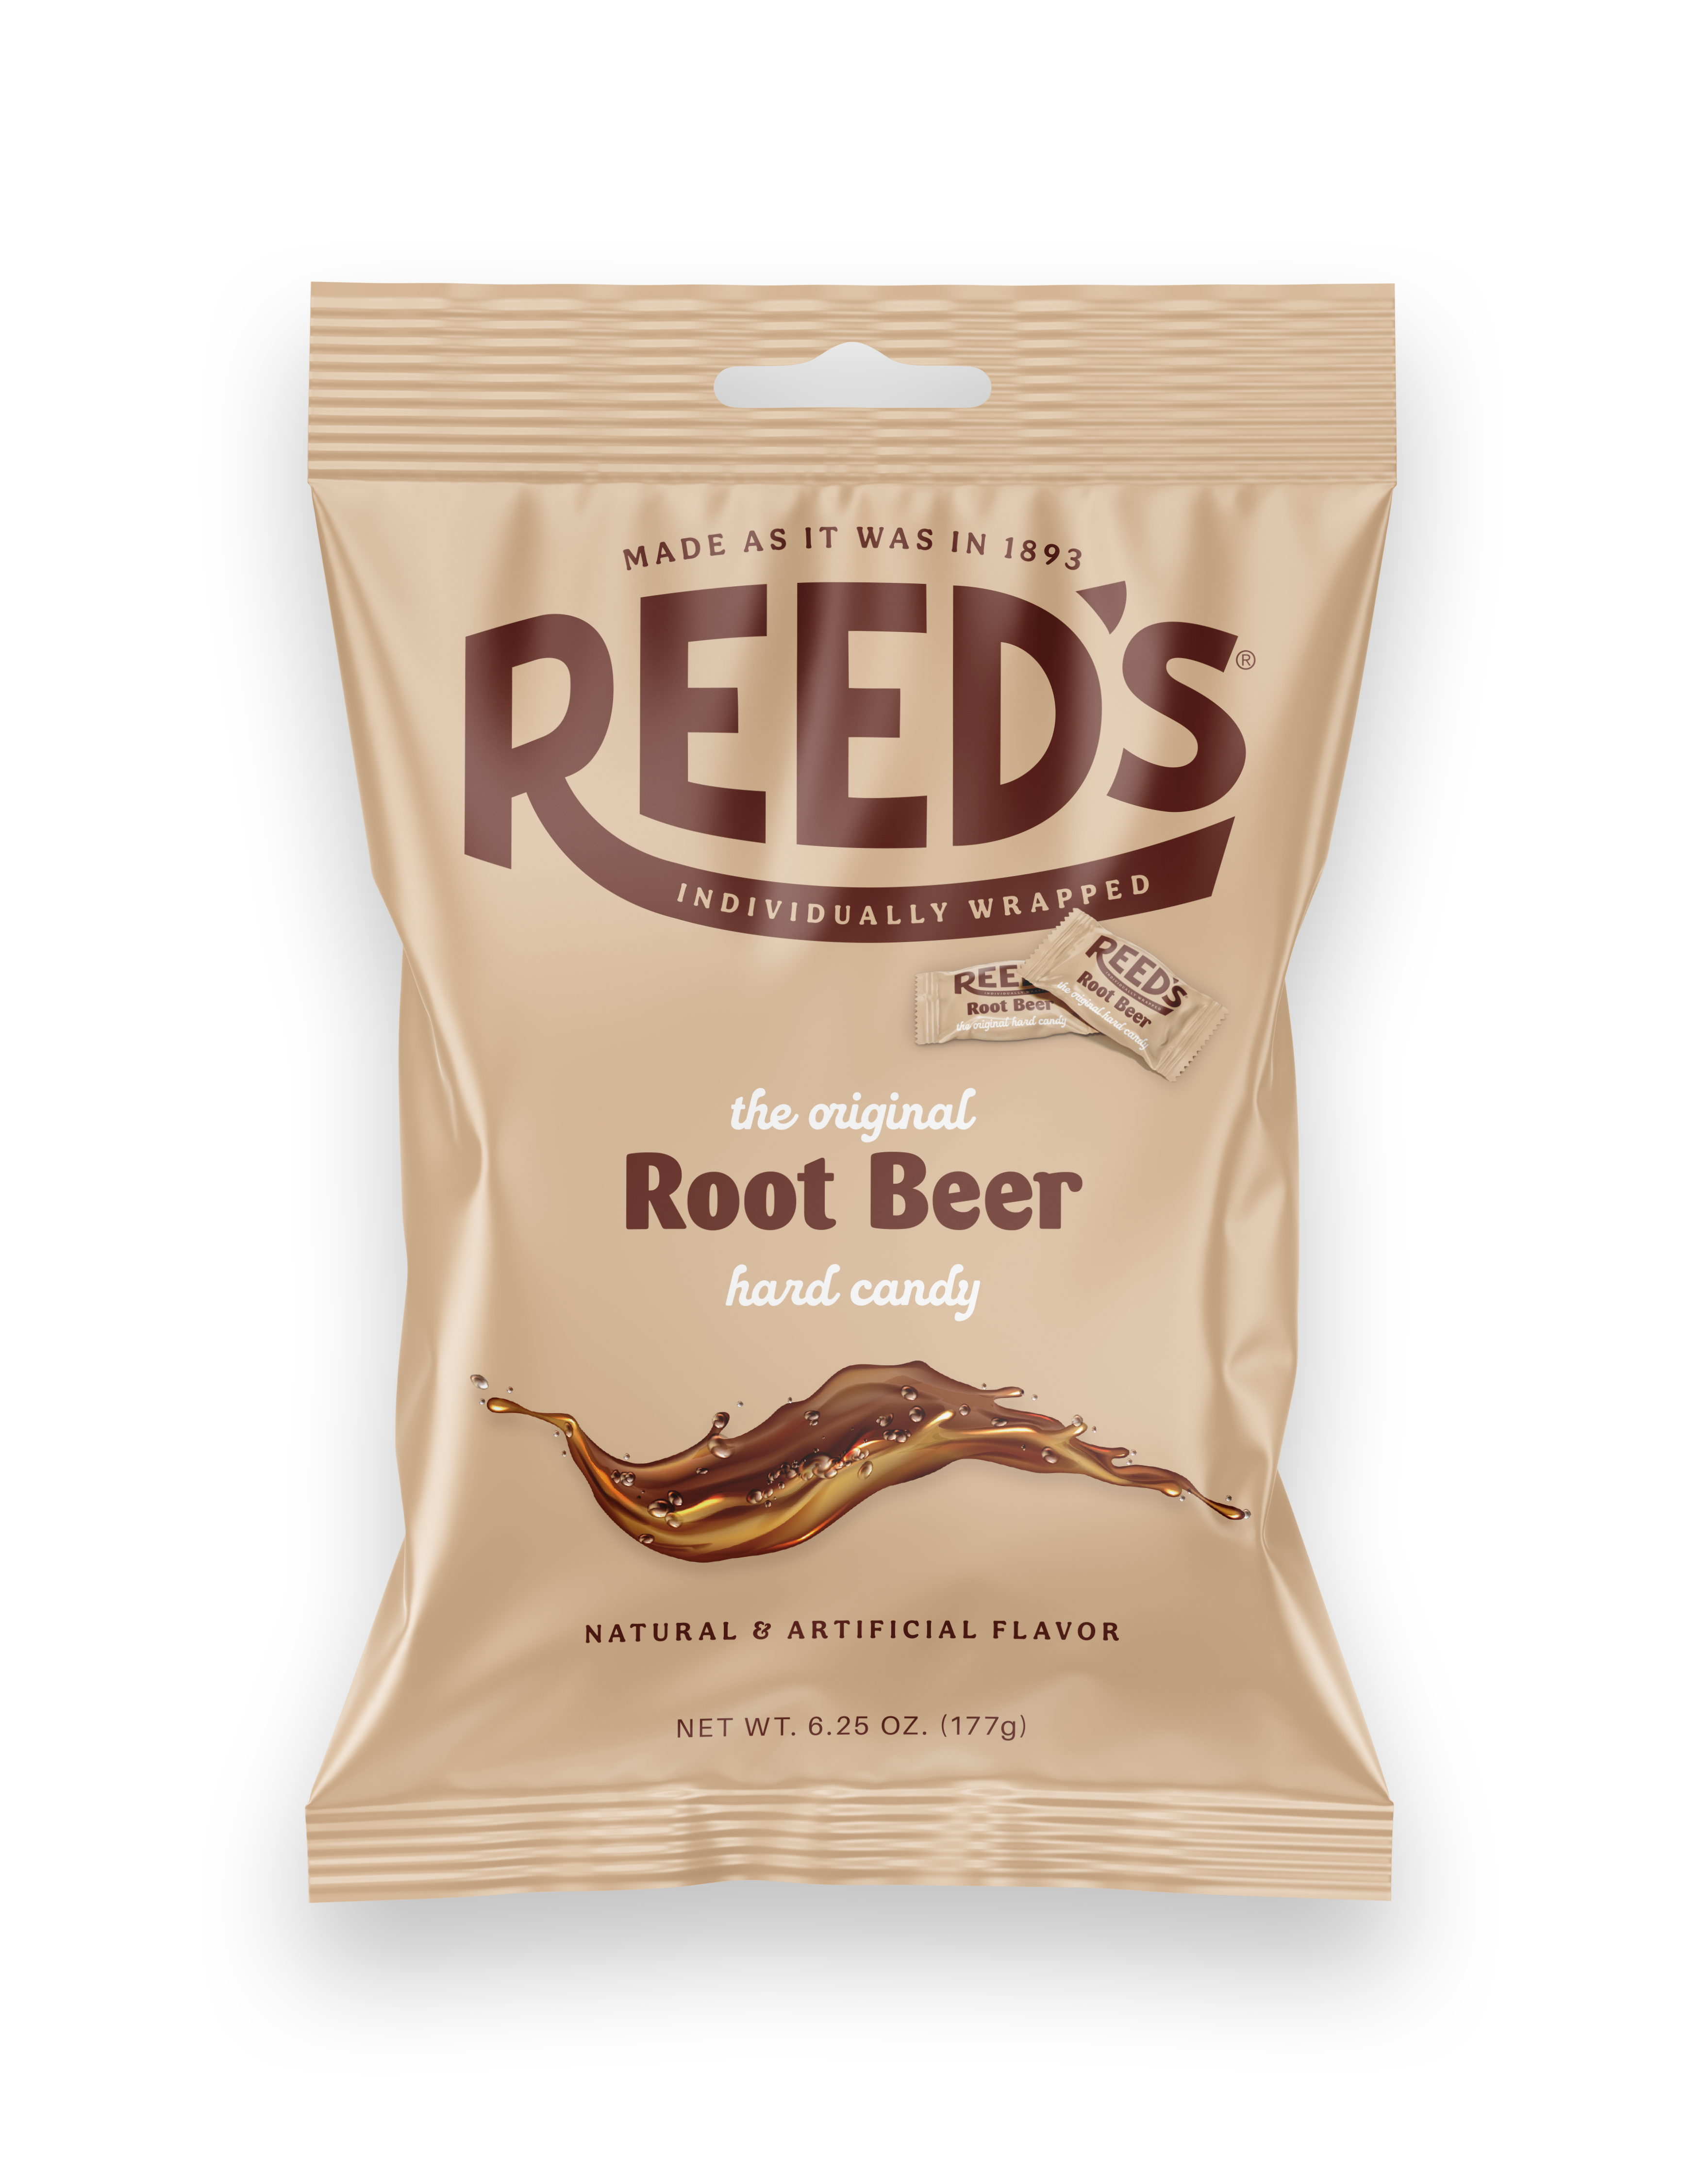 REED'S ROOT BEER